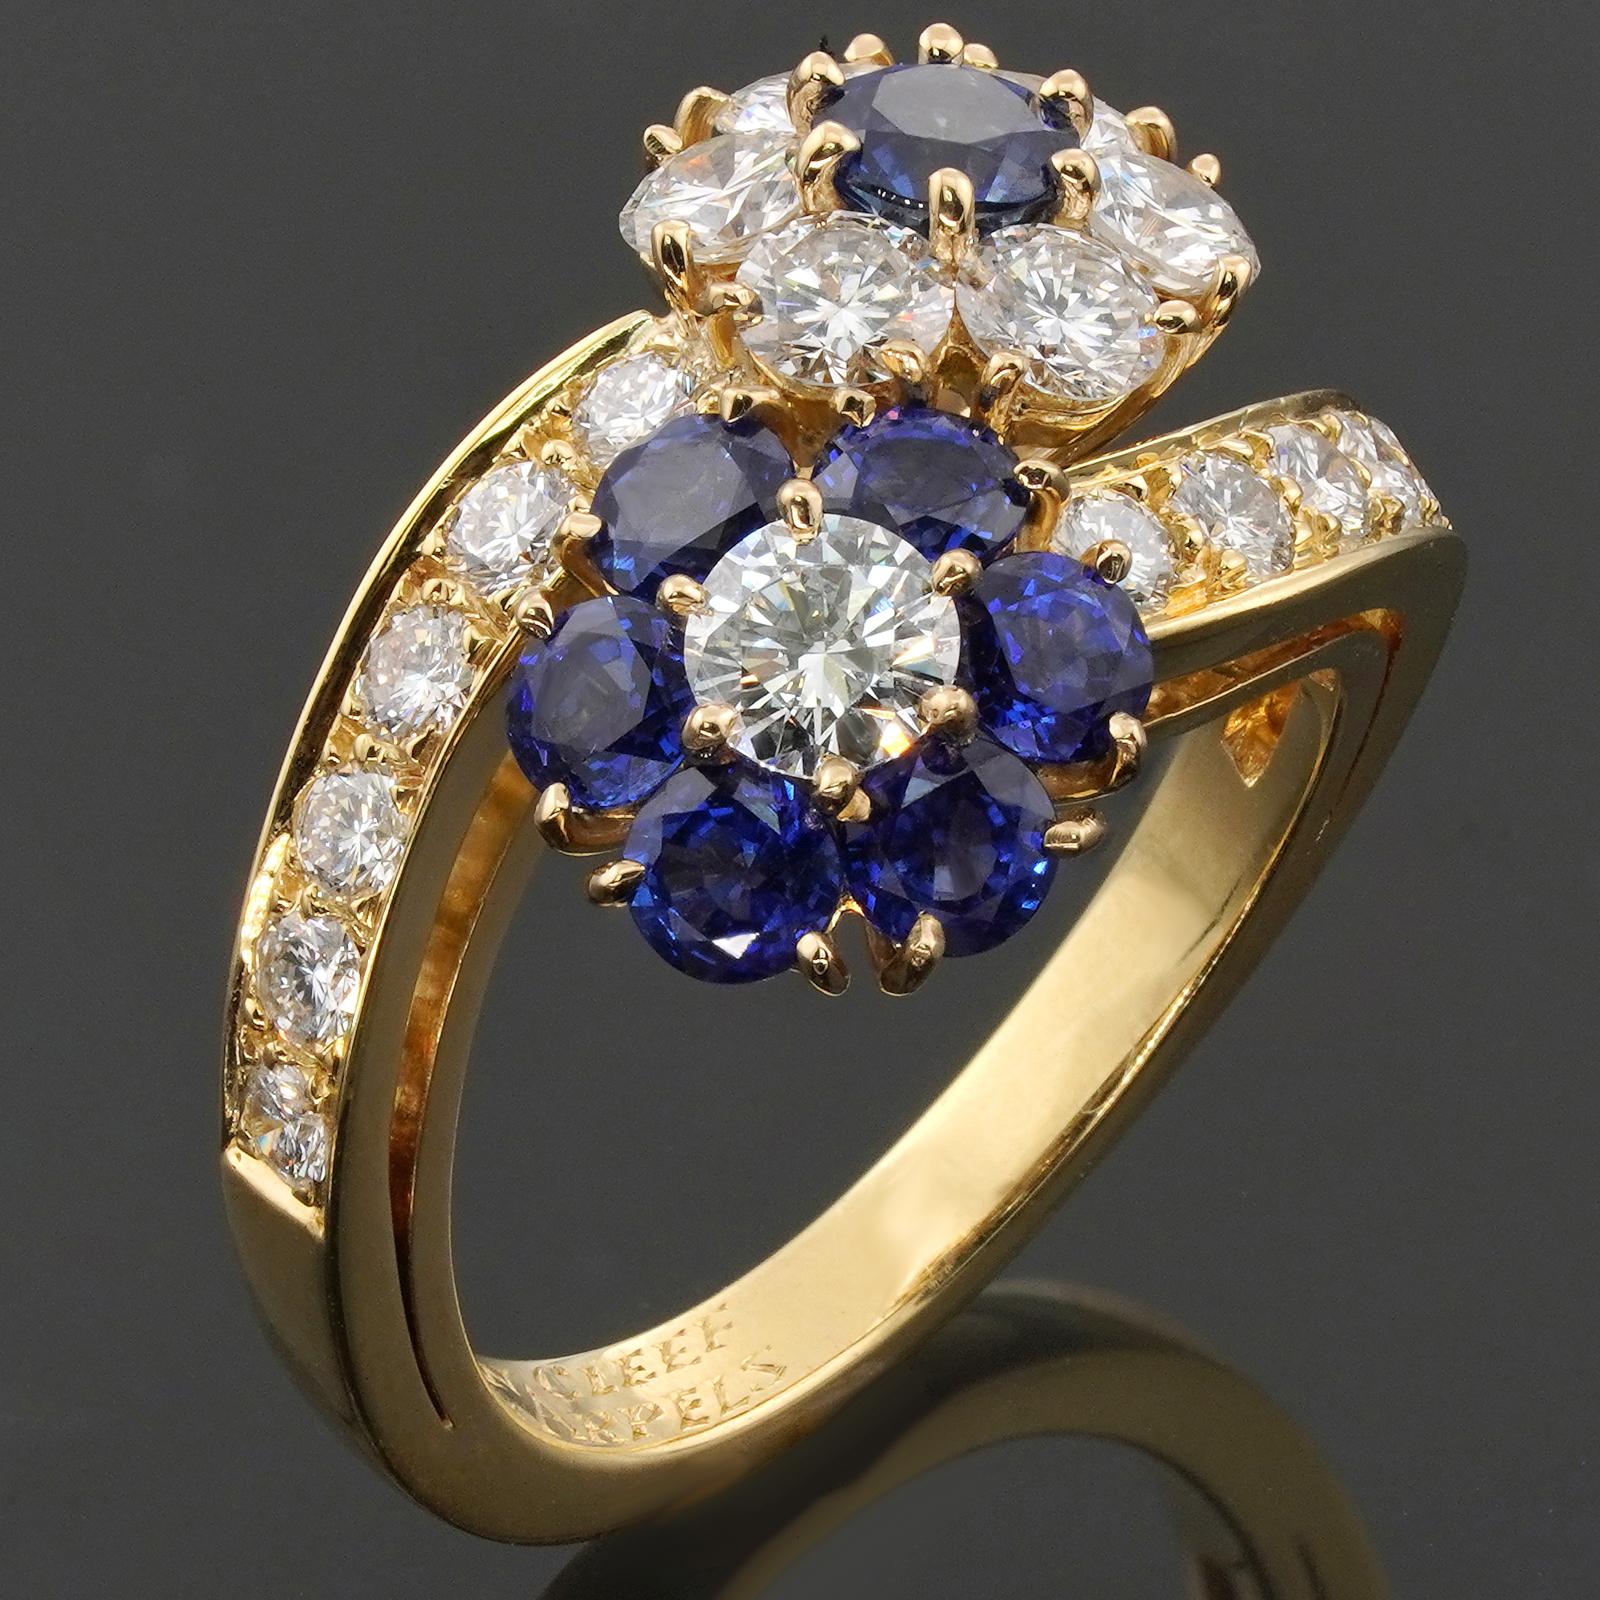 Dieser wunderschöne Ring von Van Cleef & Arpels aus der exquisiten Fleurette-Kollektion zeichnet sich durch ein doppeltes Blumendesign aus, das in 18 Karat Gelbgold gefertigt und mit runden blauen Saphiren und runden Diamanten im Brillantschliff